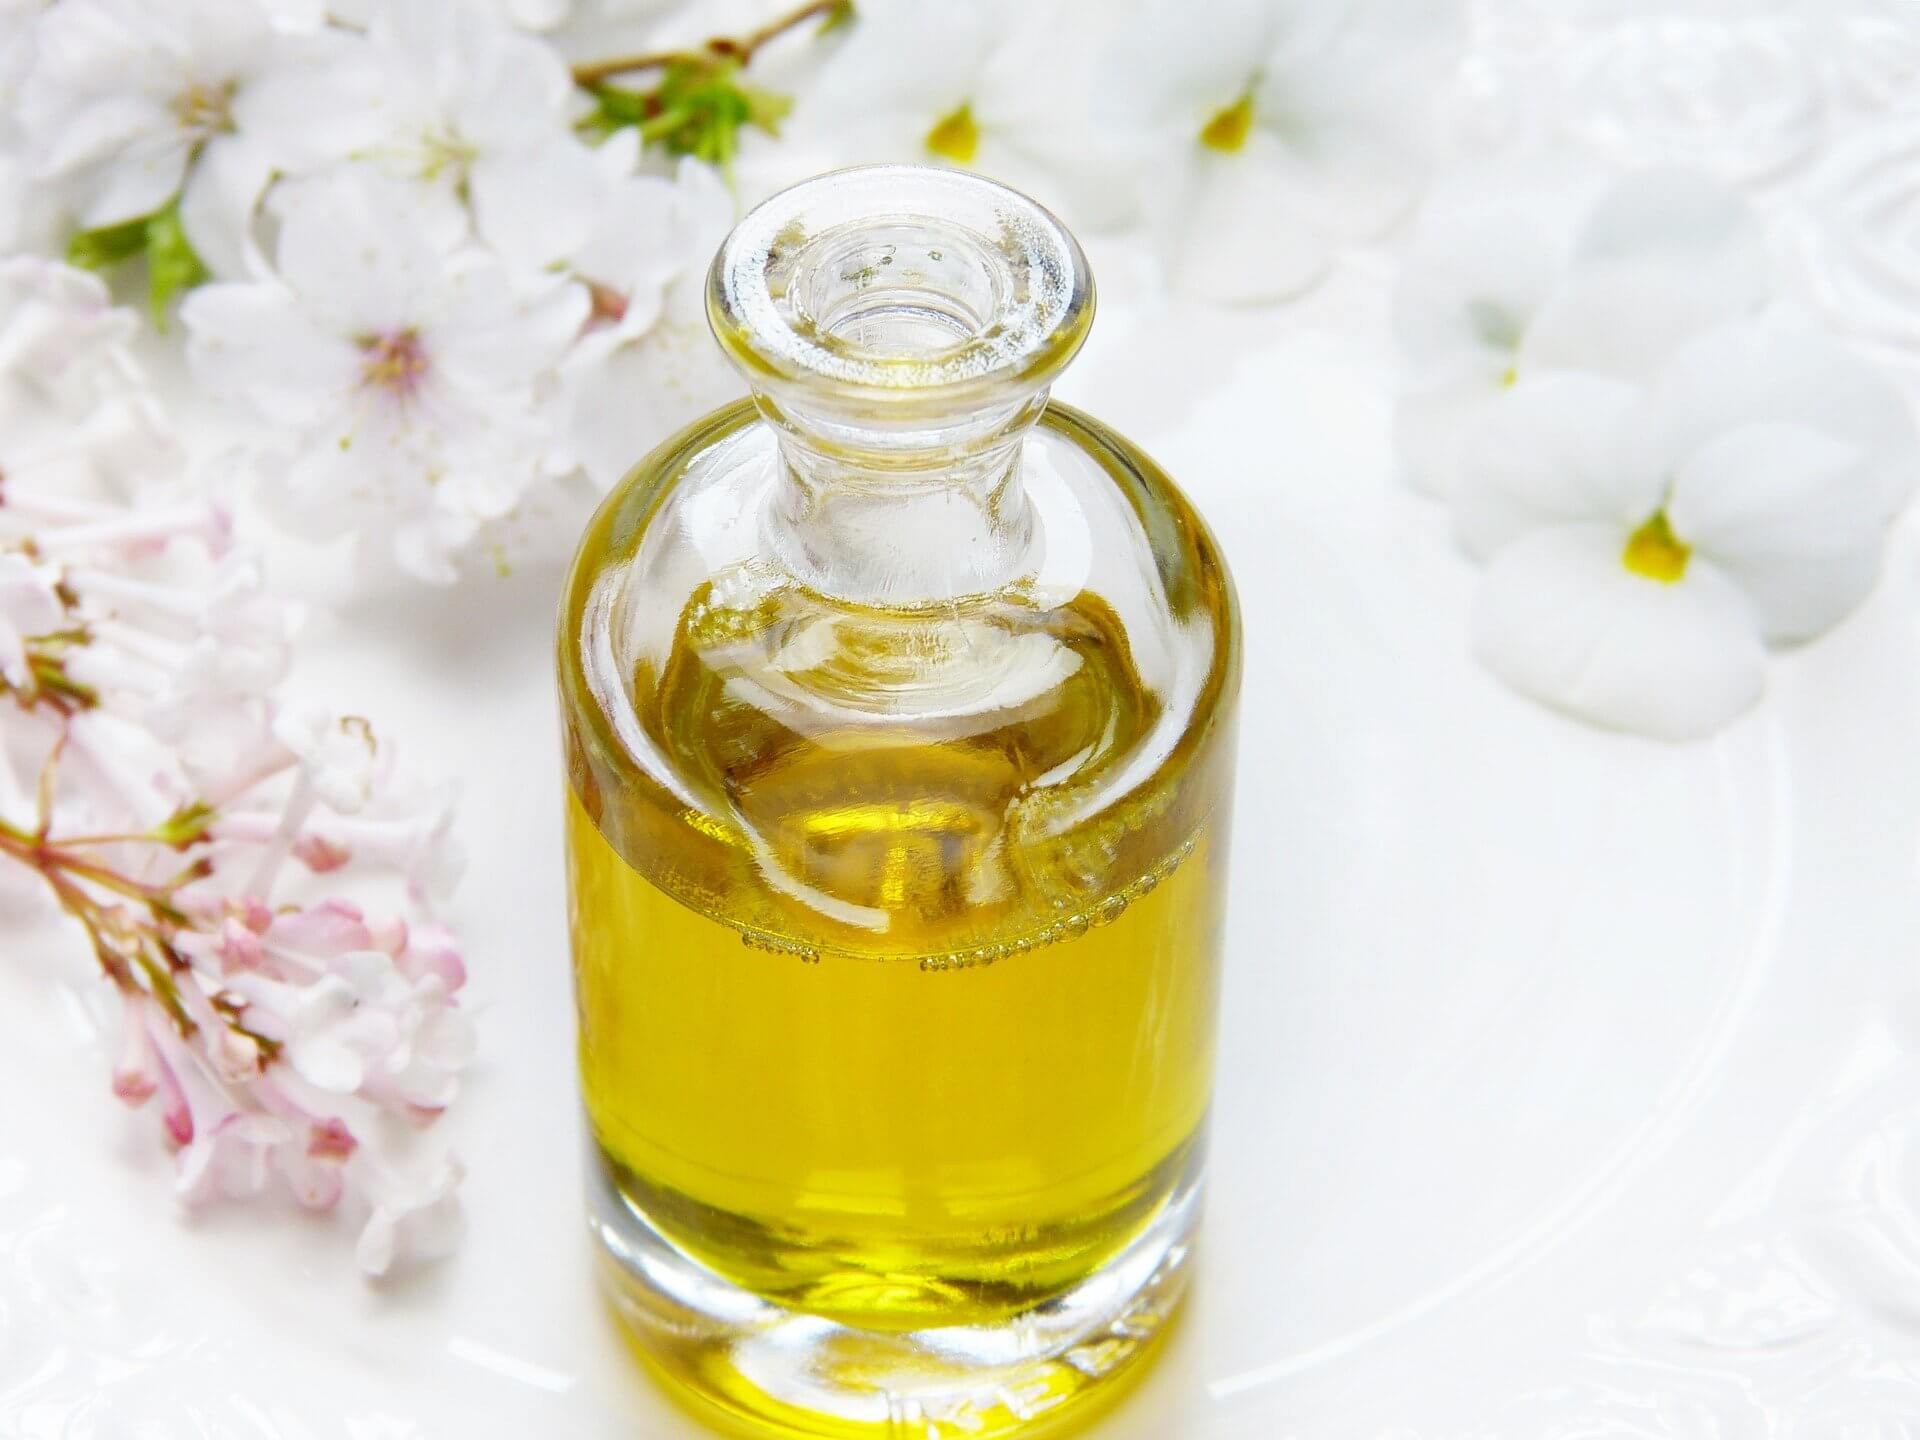 Oleje w kosmetykach - Jakie są rodzaje olei kosmetycznych? Jaki olej do jakiej cery?